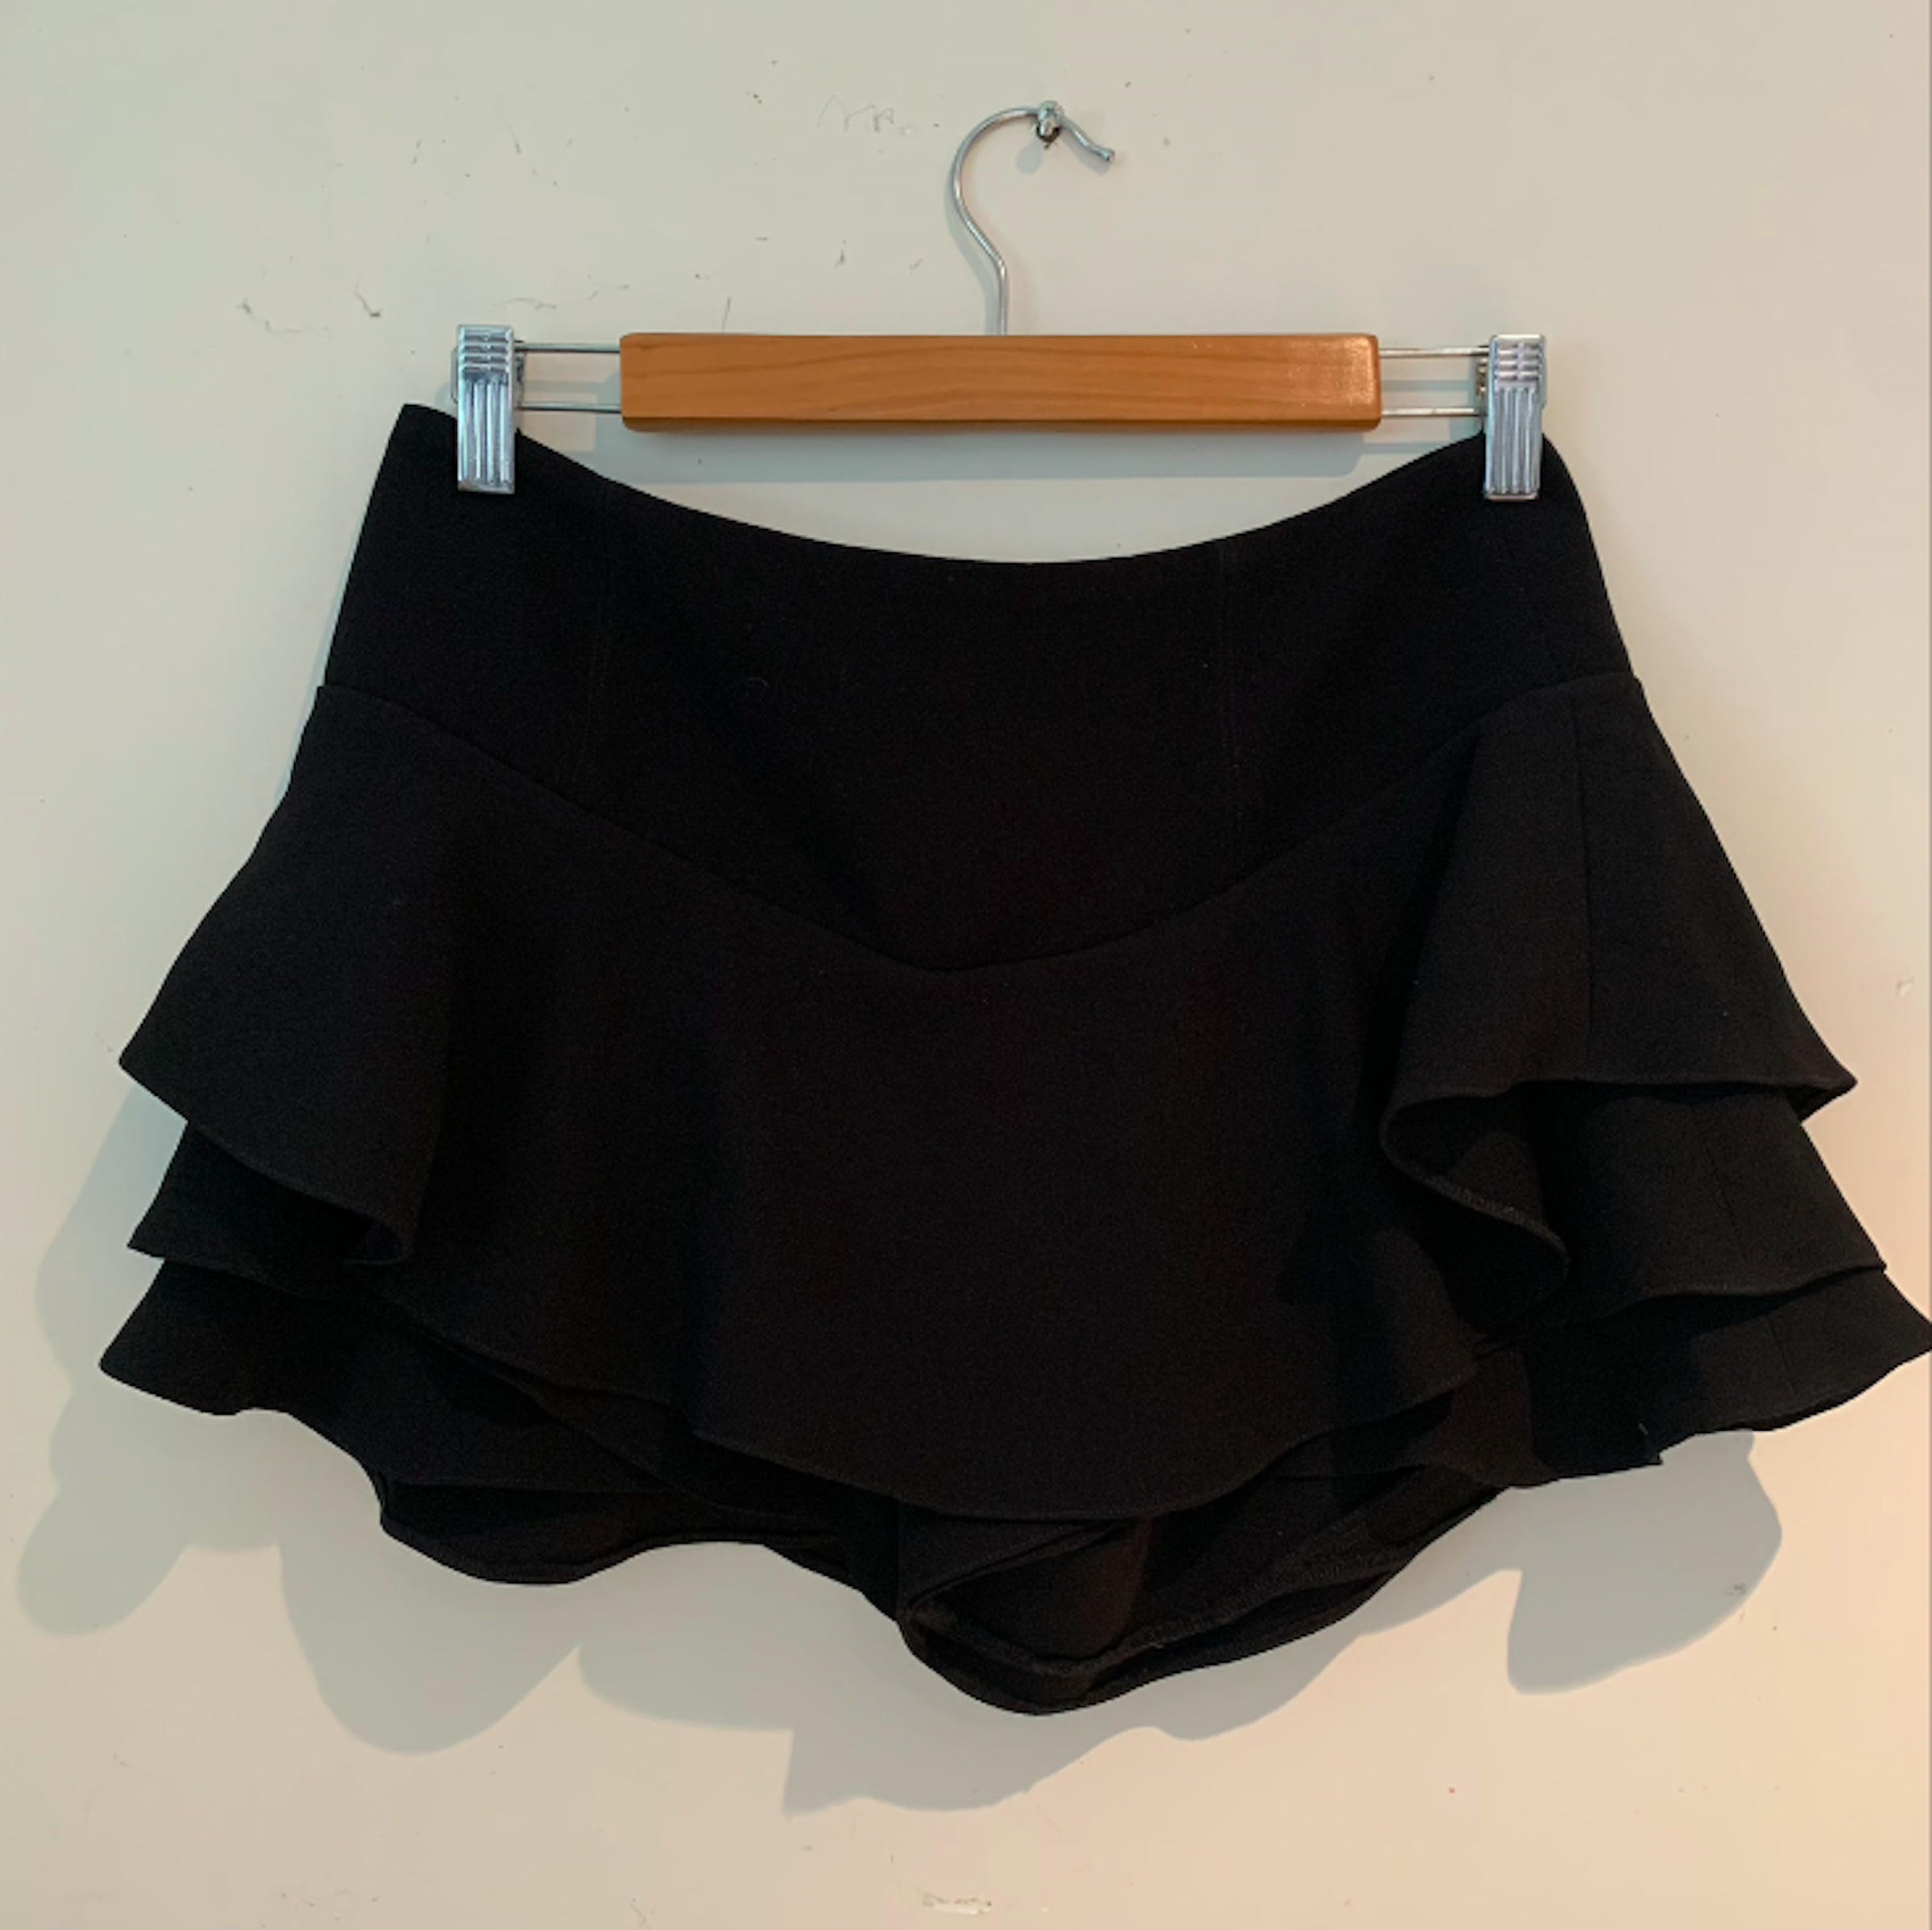 Falda negra de - $300.00 | Gloset